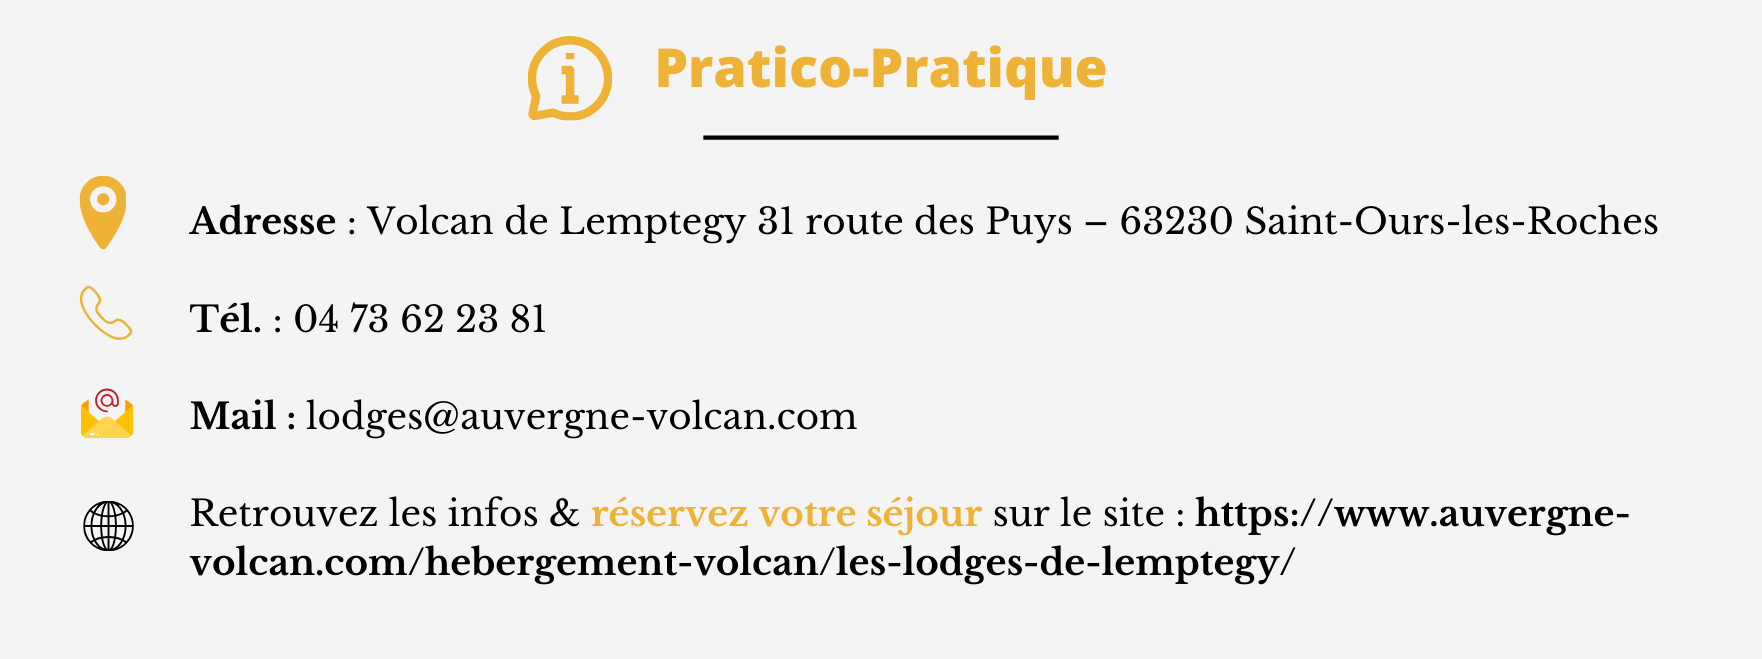 Pratico Pratique Lodges de Lemptegy